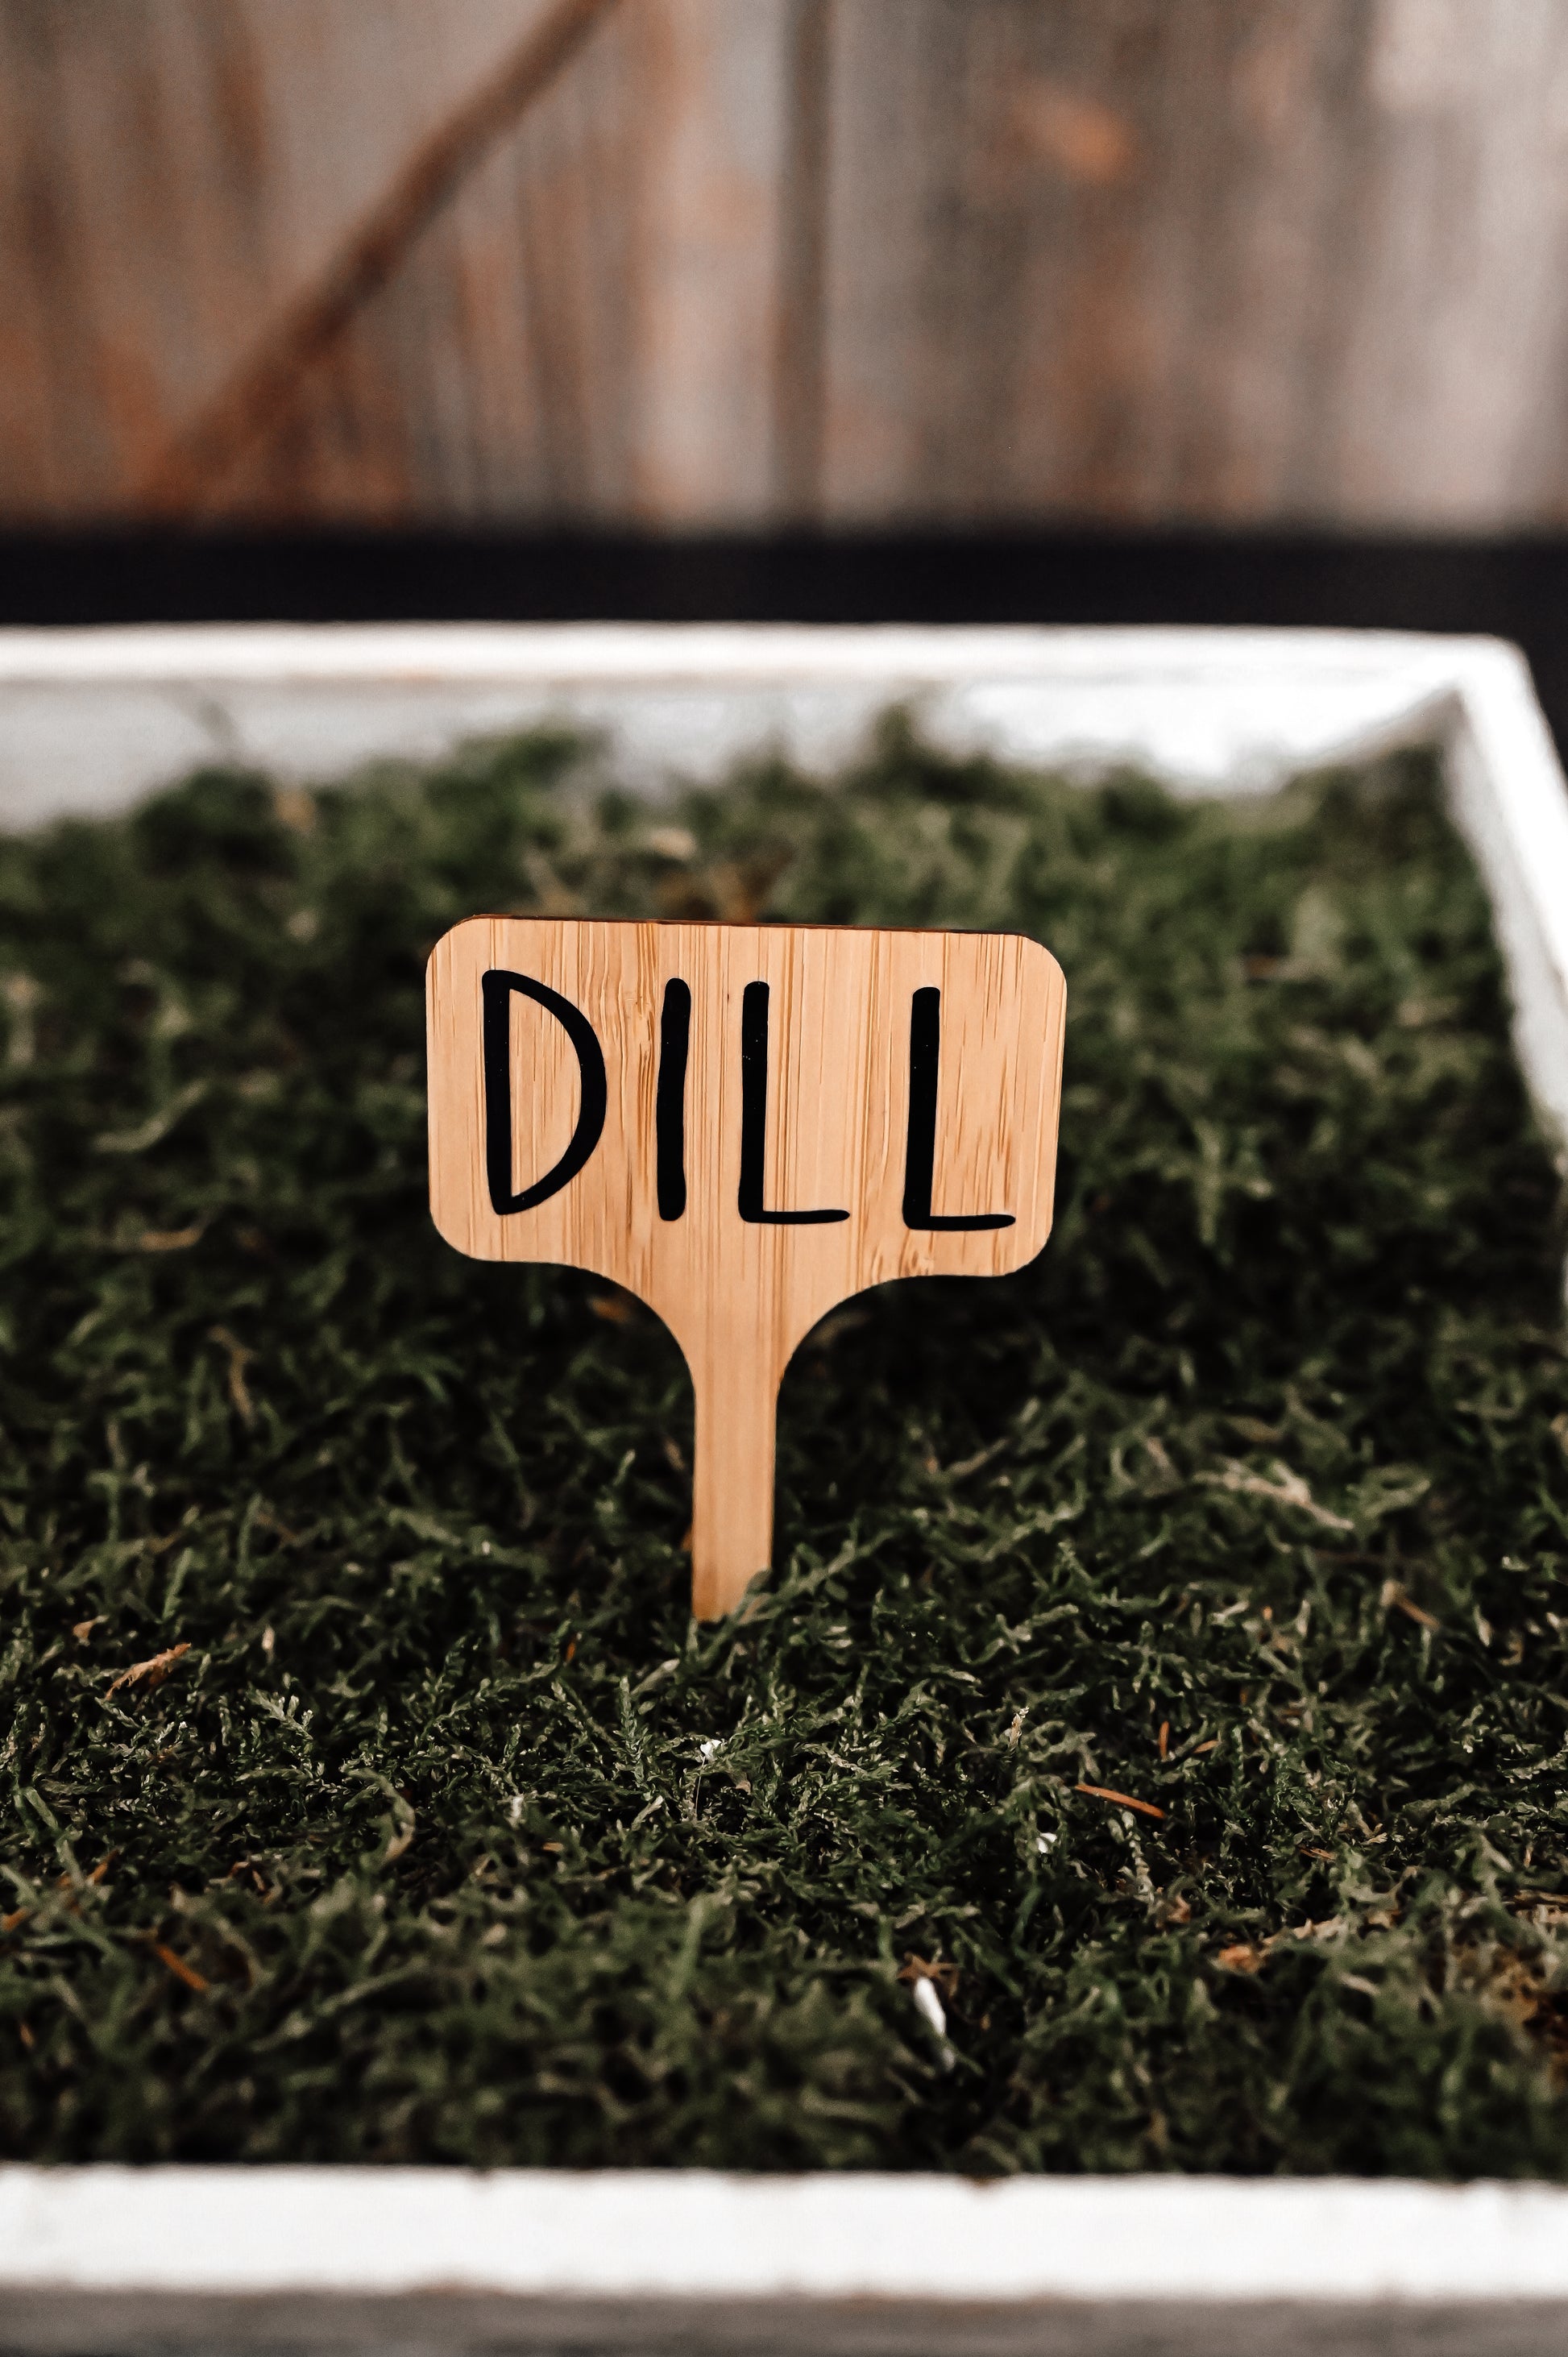 dill-garden-stake